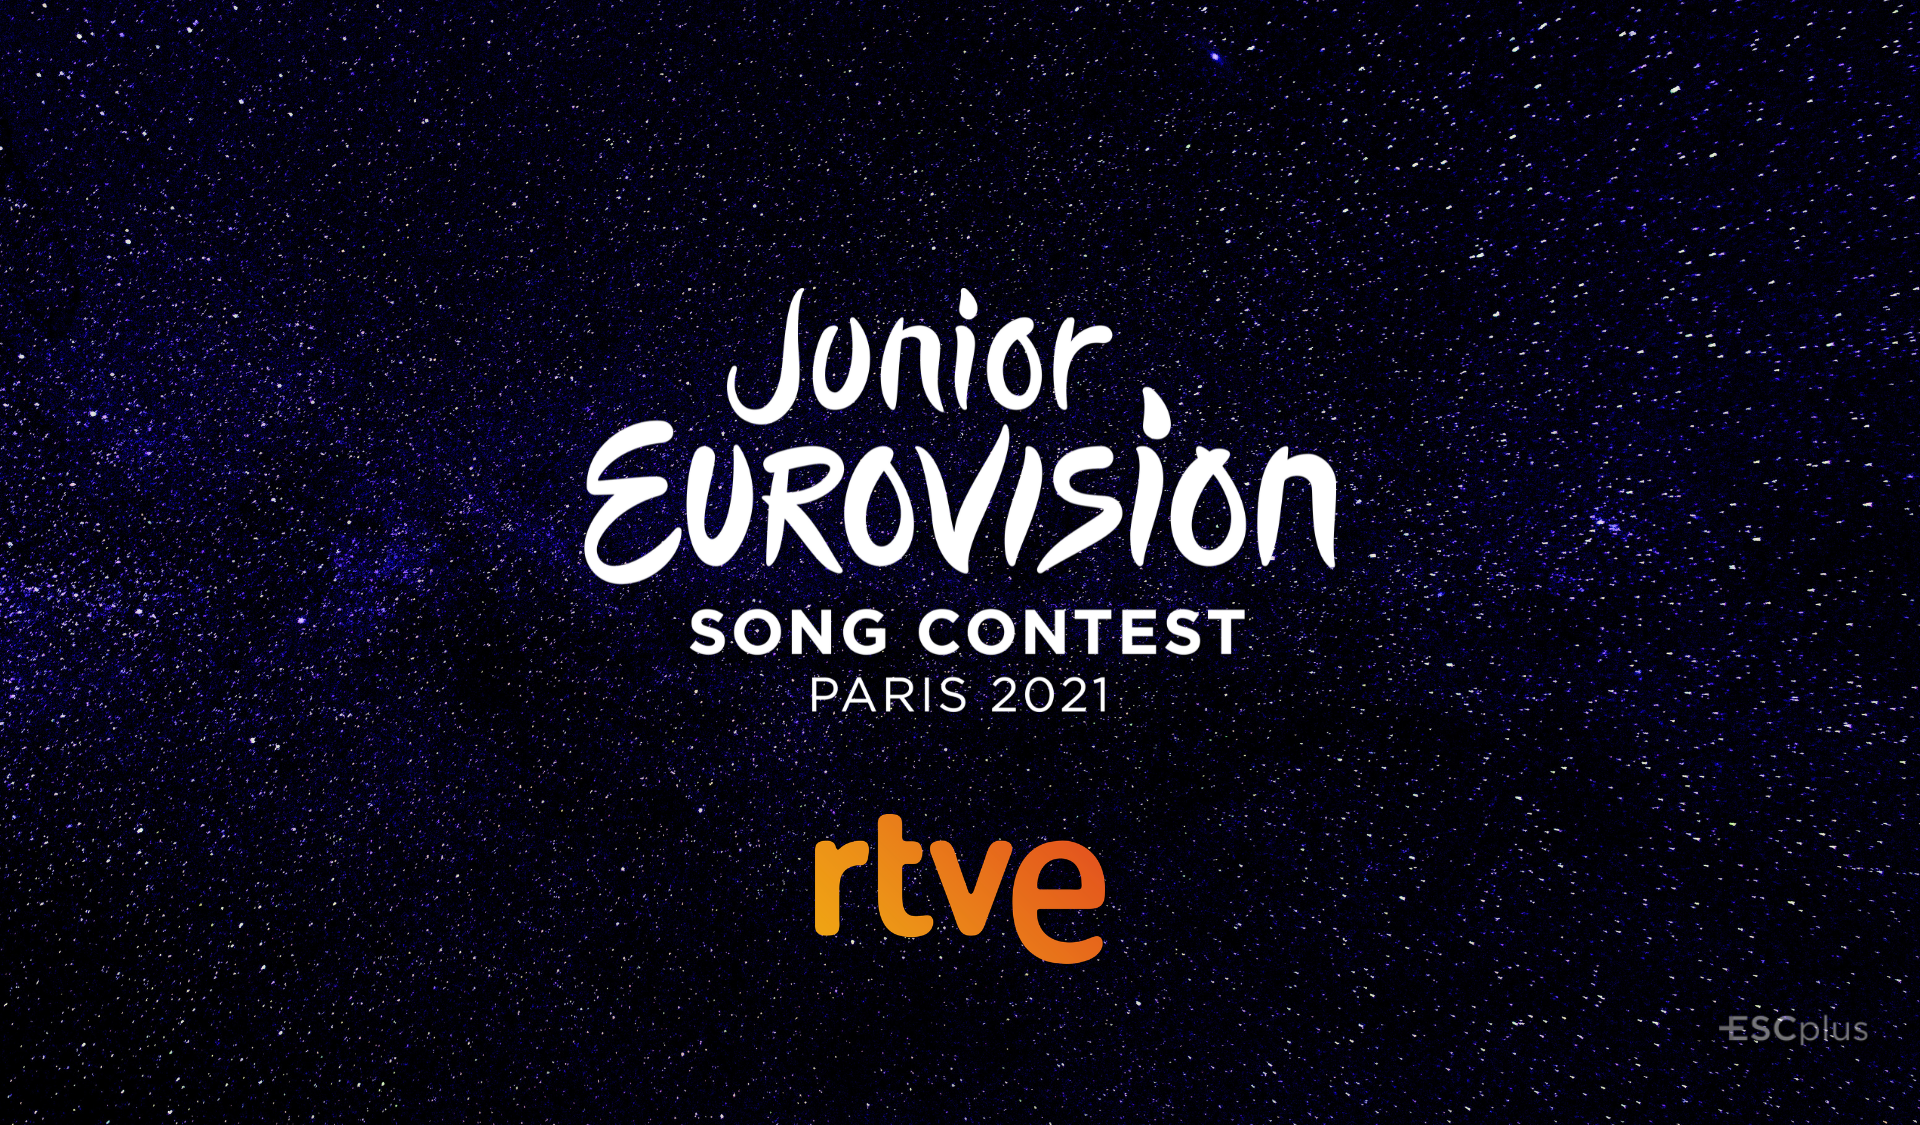 ¡España confirma su participación en Eurovisión Junior 2021! ¿Quién sucederá a Soleá?